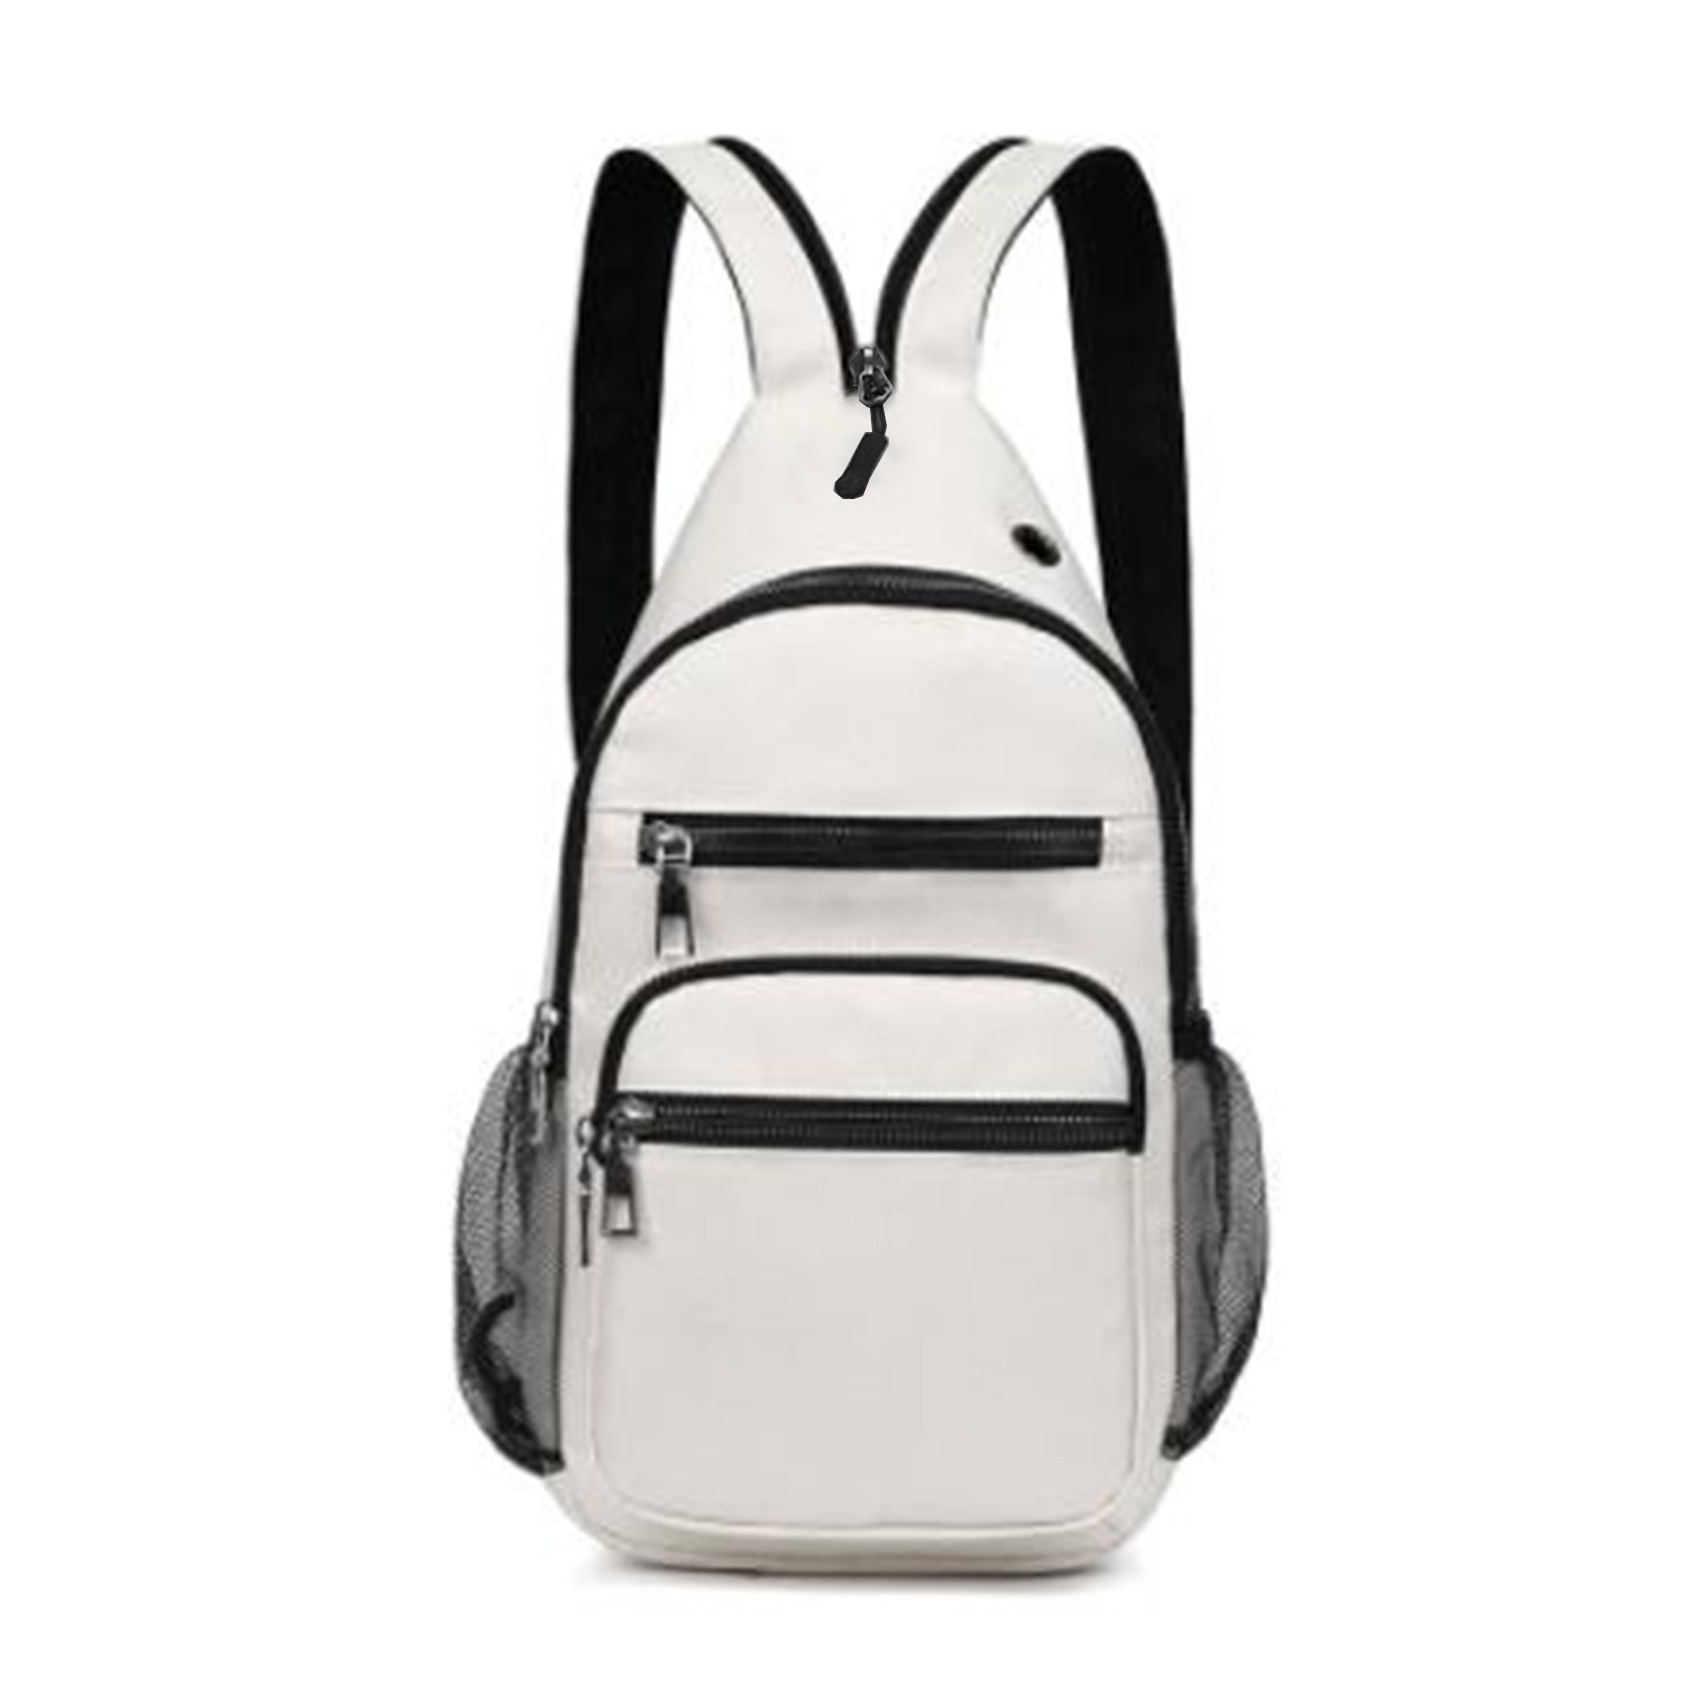 Y&R Direct Sling Bag Sling Backpack,Shoulder Chest Crossbody Bag Purse